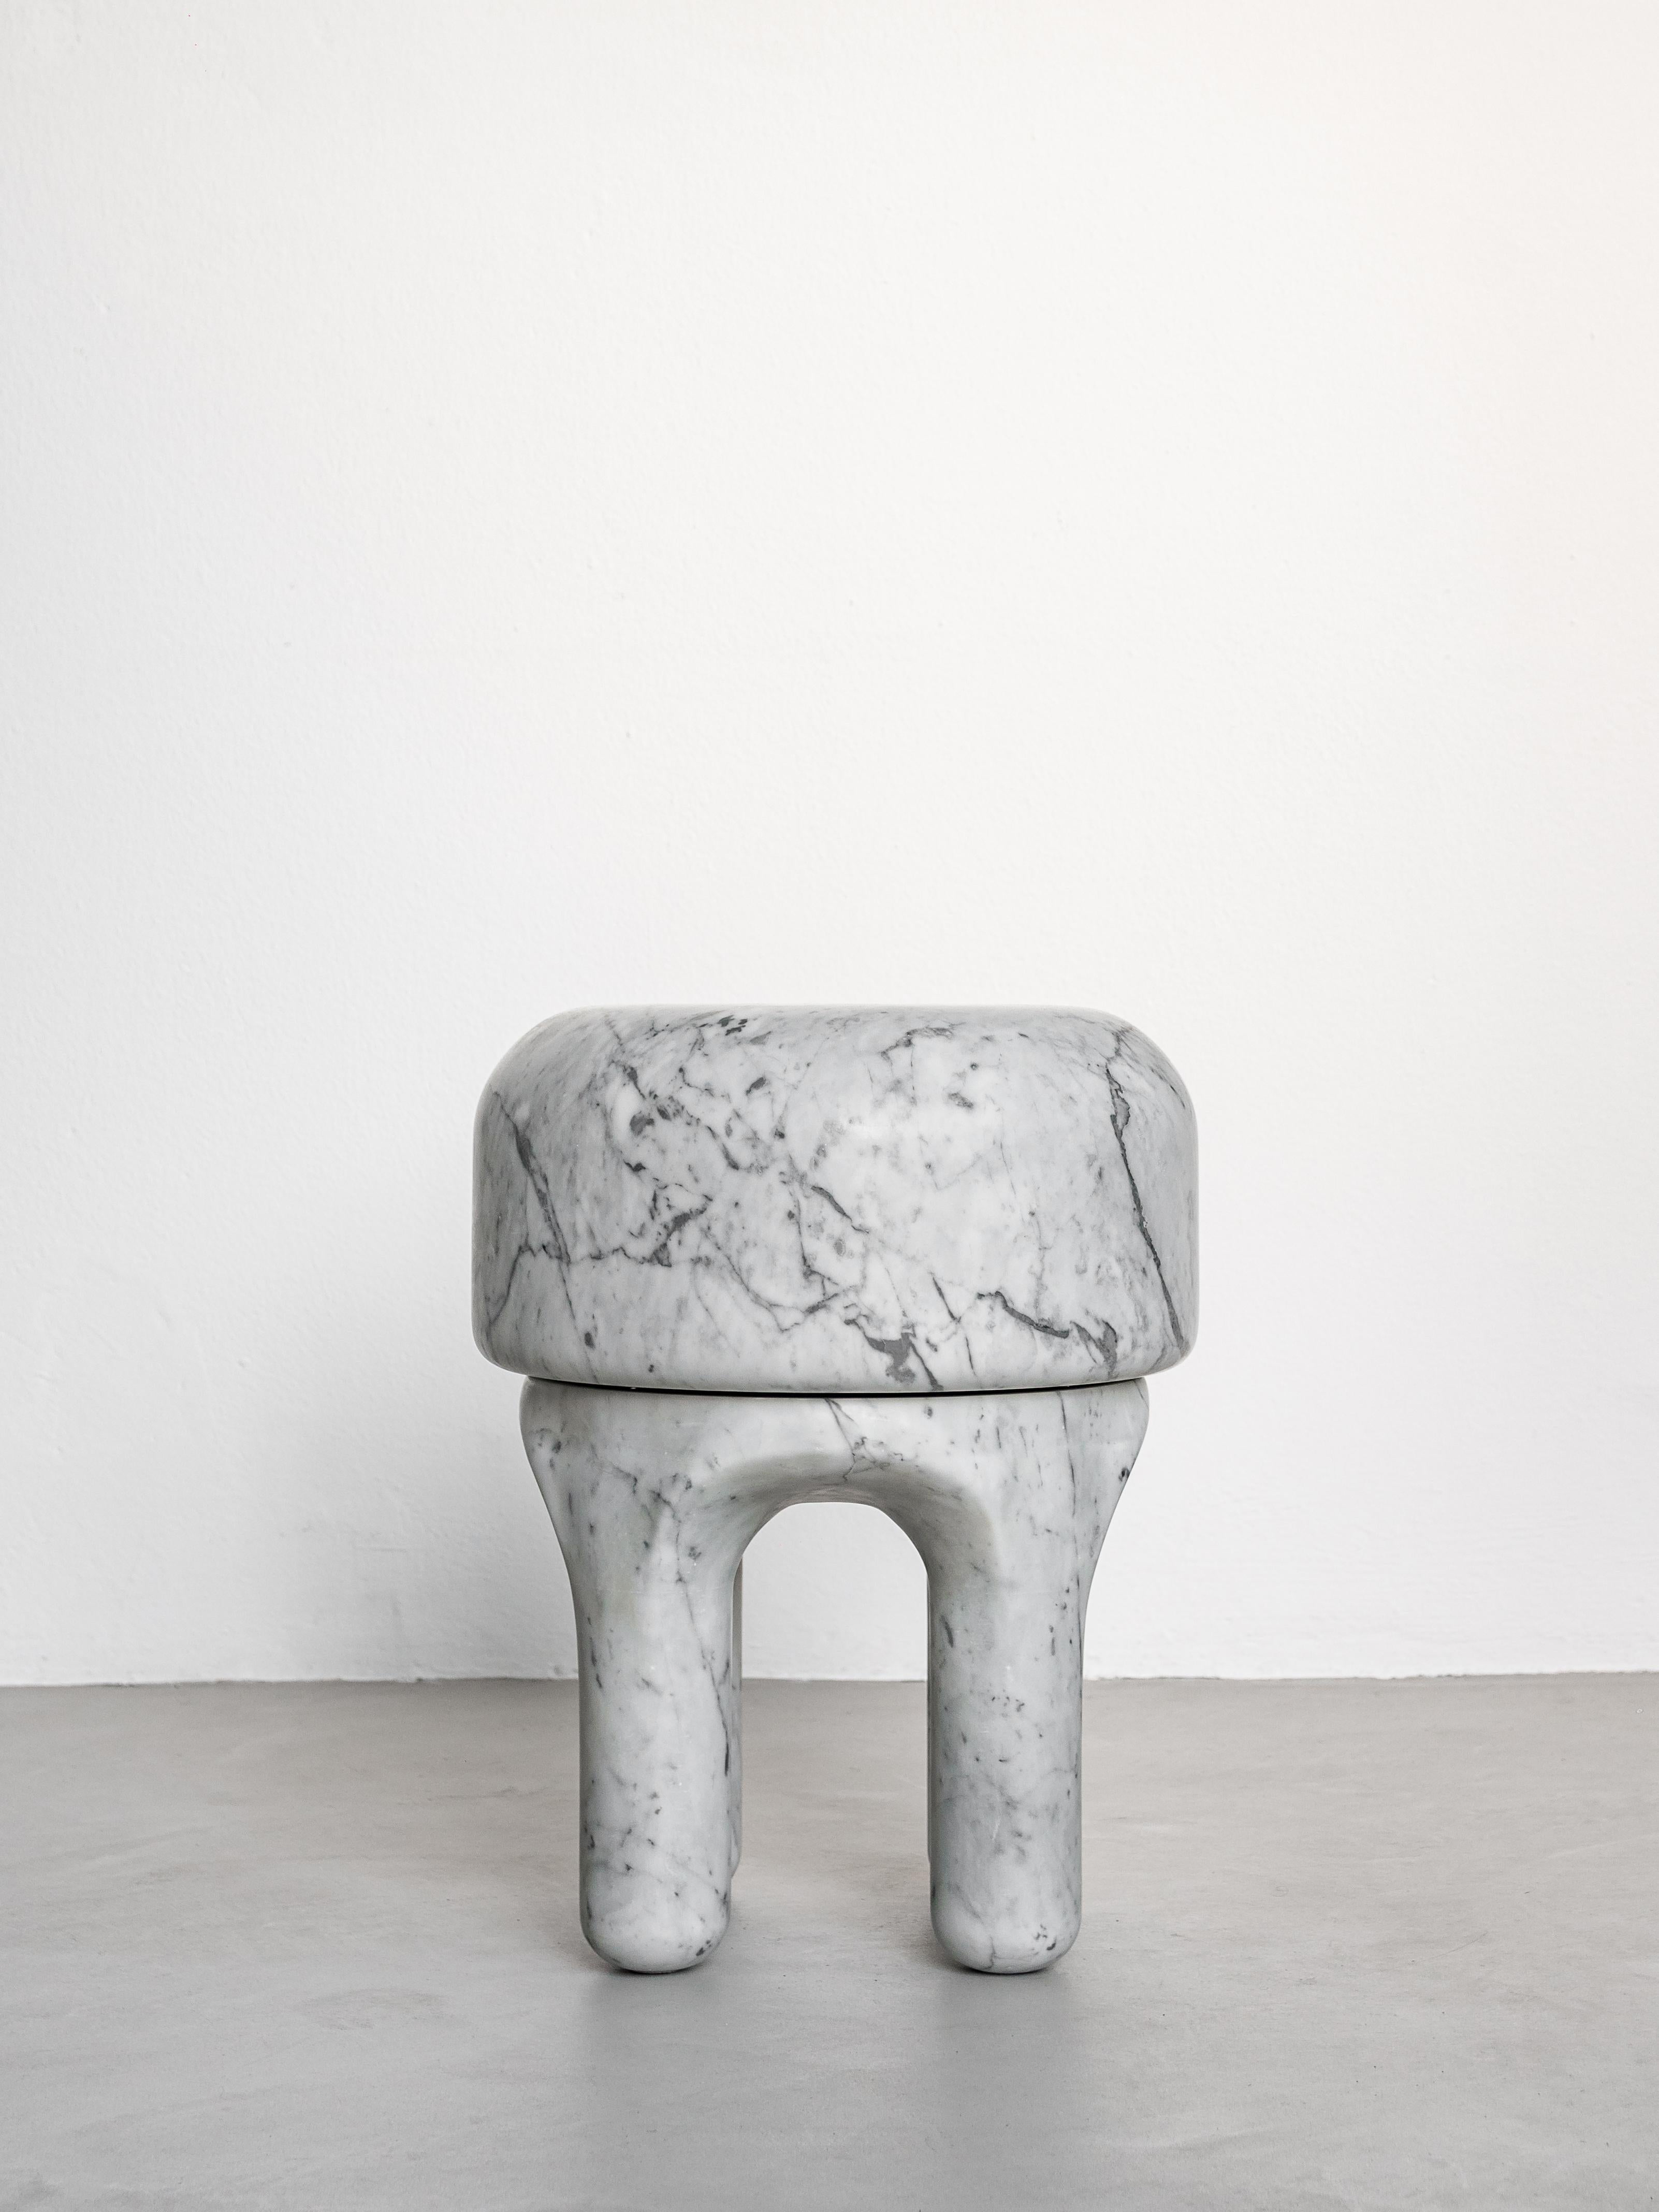 Hocker aus weißem Carrara-Marmor - Collectional Italian Design - Beistelltisch aus Marmor

Vergangenheit, Gegenwart und Zukunft treffen in diesem skulpturalen Werk von Spinzi aufeinander. Warum, werden Sie sich fragen? Denn Medusa ist einem Traum